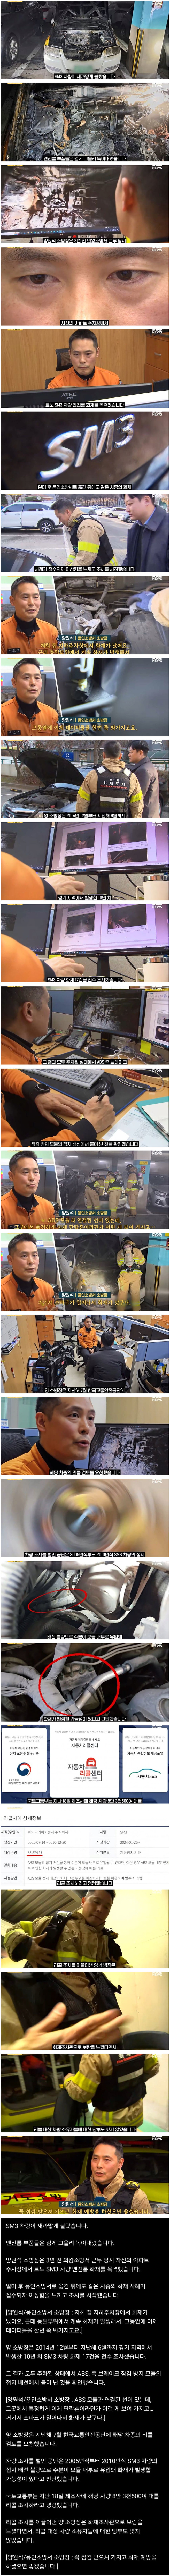 기막힌 촉으로 시한폭탄 8만대 회수